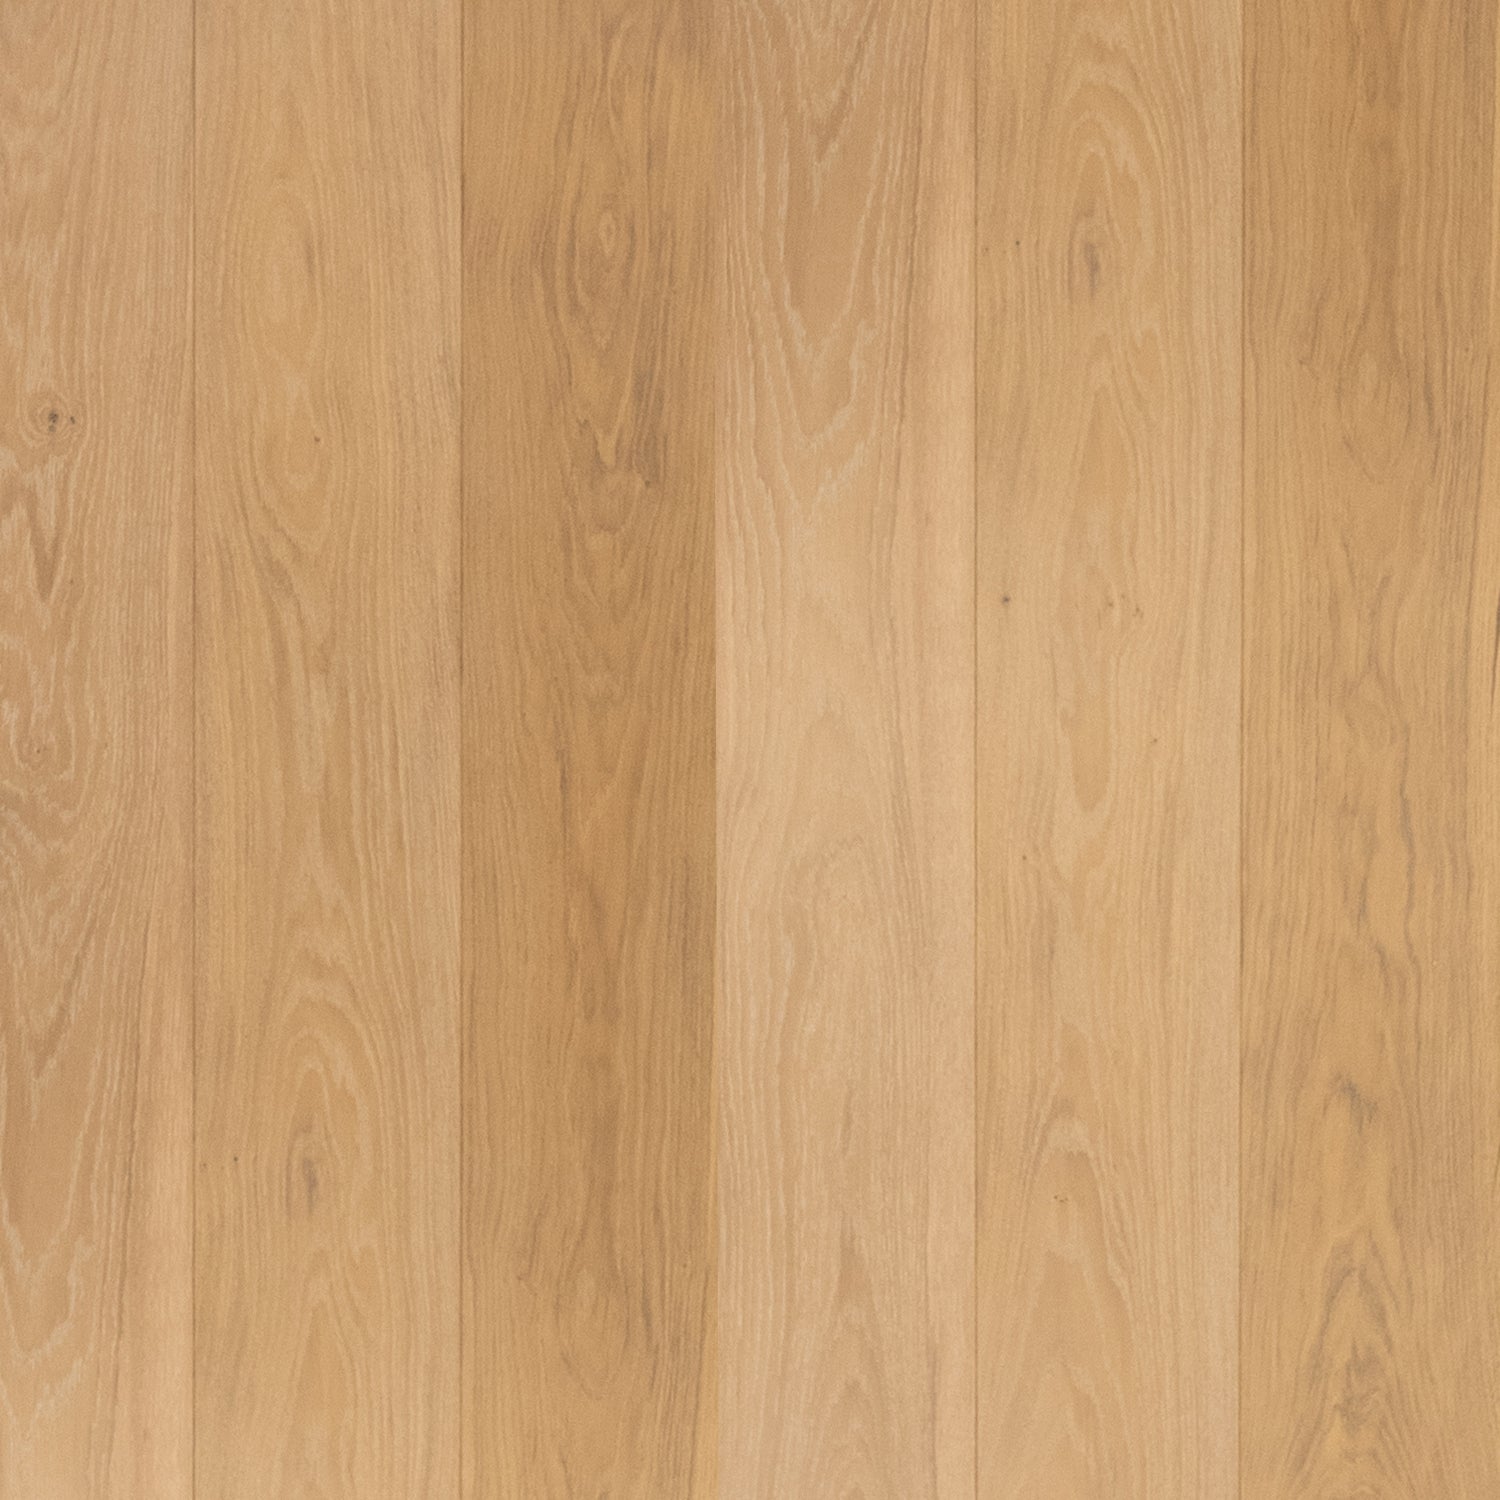 Cotton Oak Timber Flooring T&G